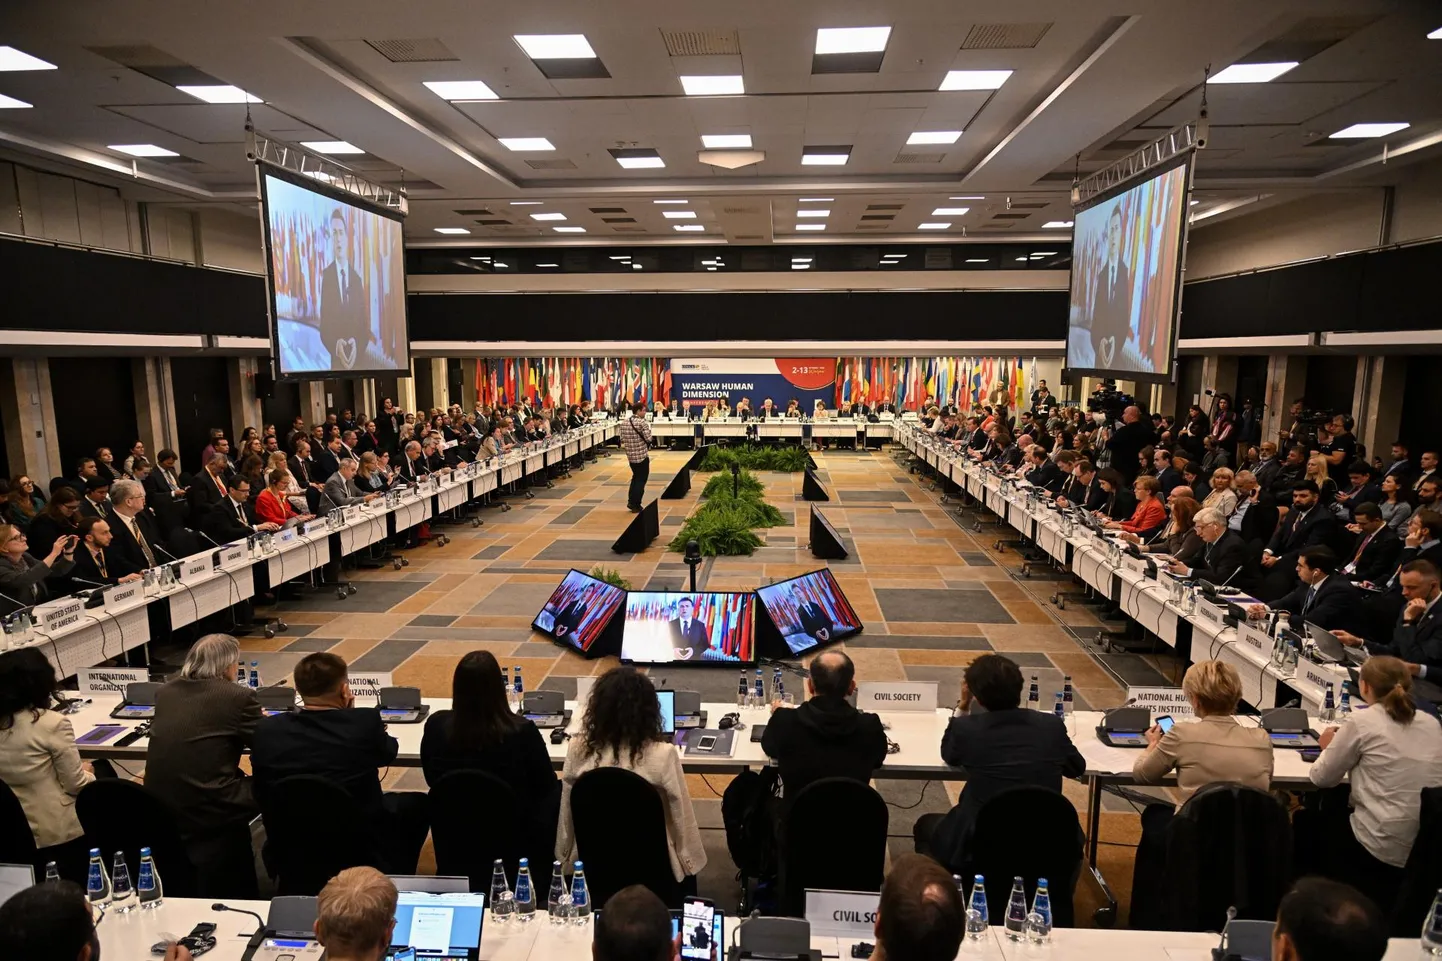 Esimene päev Varssavi konverentsil (Human Dimension Conference). Konverents oli pühendatud inimõigustele ja -vabadustele OSCE piirkonnas.